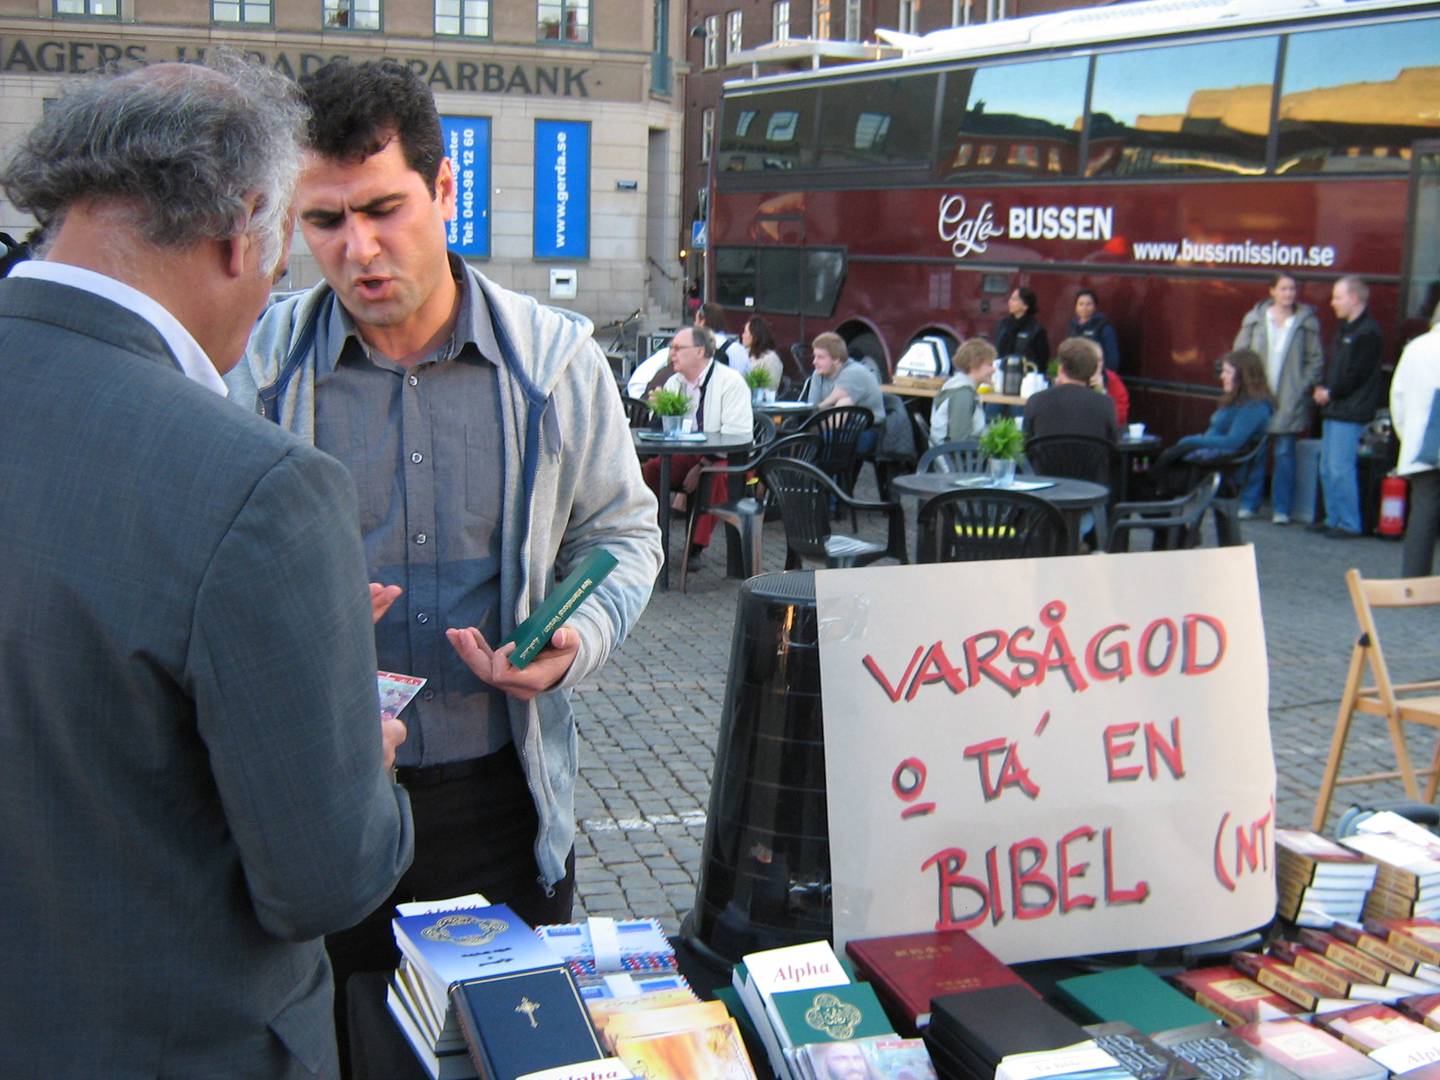 Bussmissionen på hållplats Lindesberg på sin väg runt Sverige när de evangeliserar och delar ut biblar.